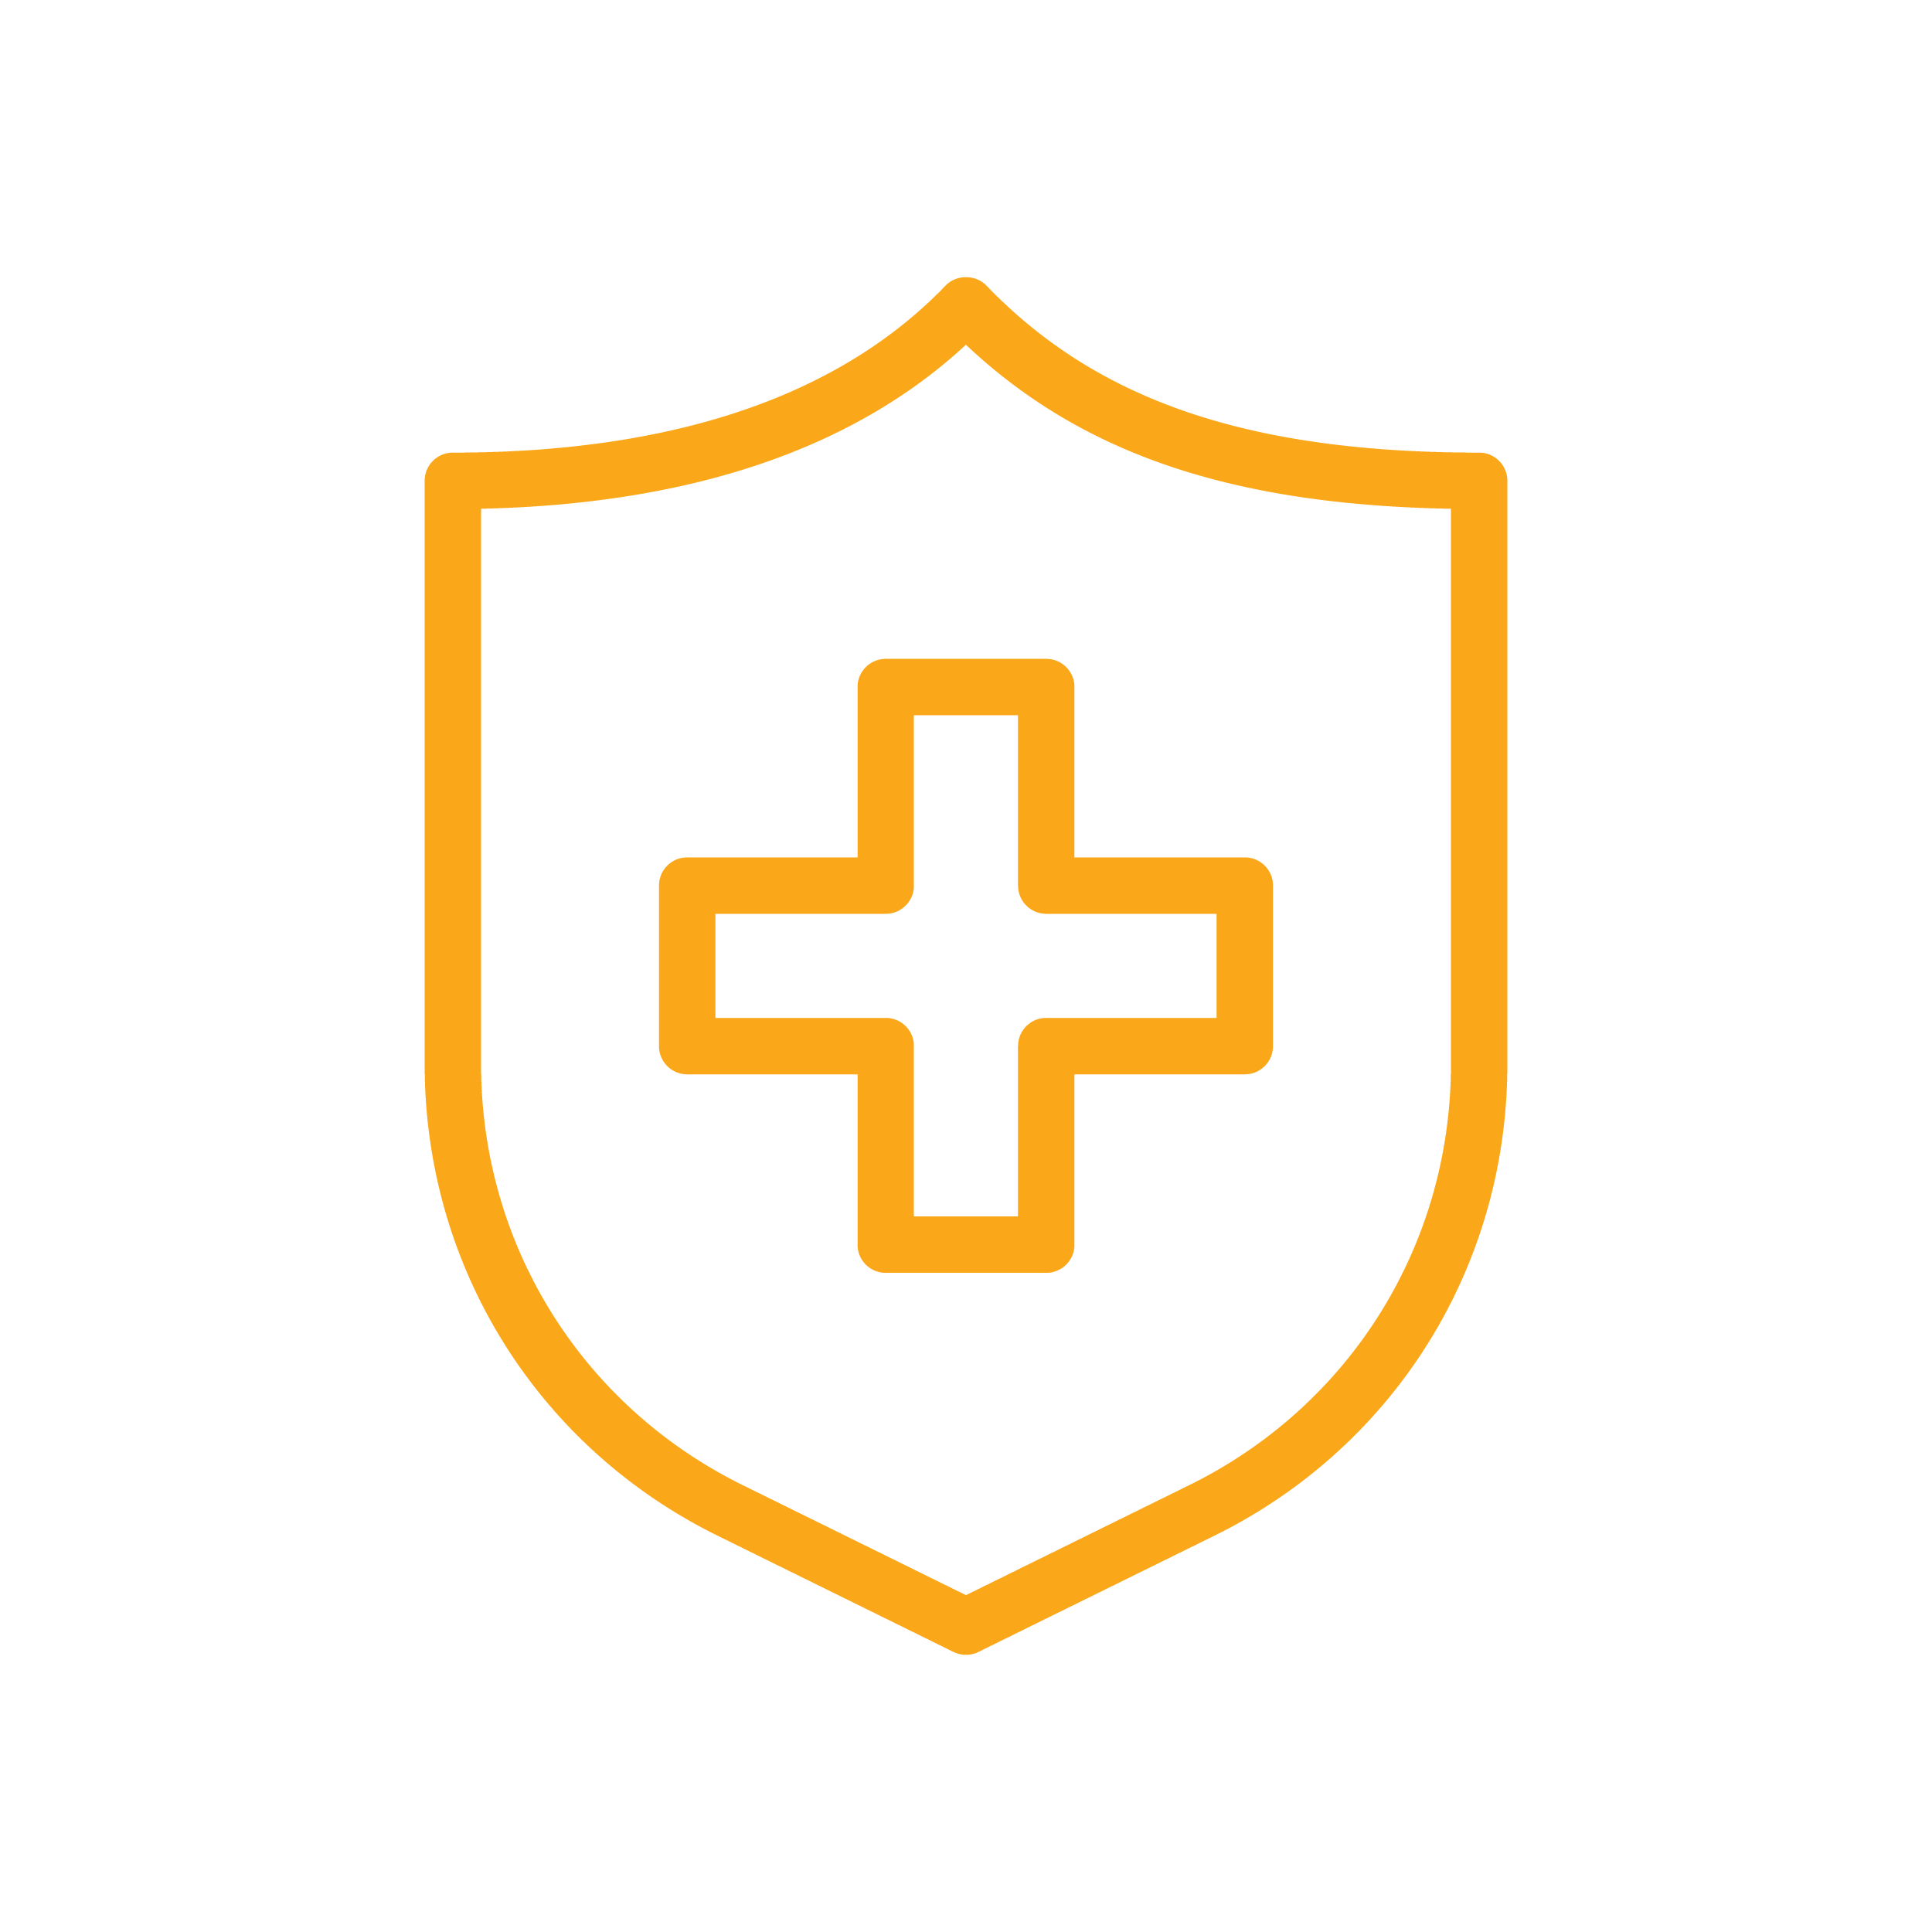 Healthcare shield icon